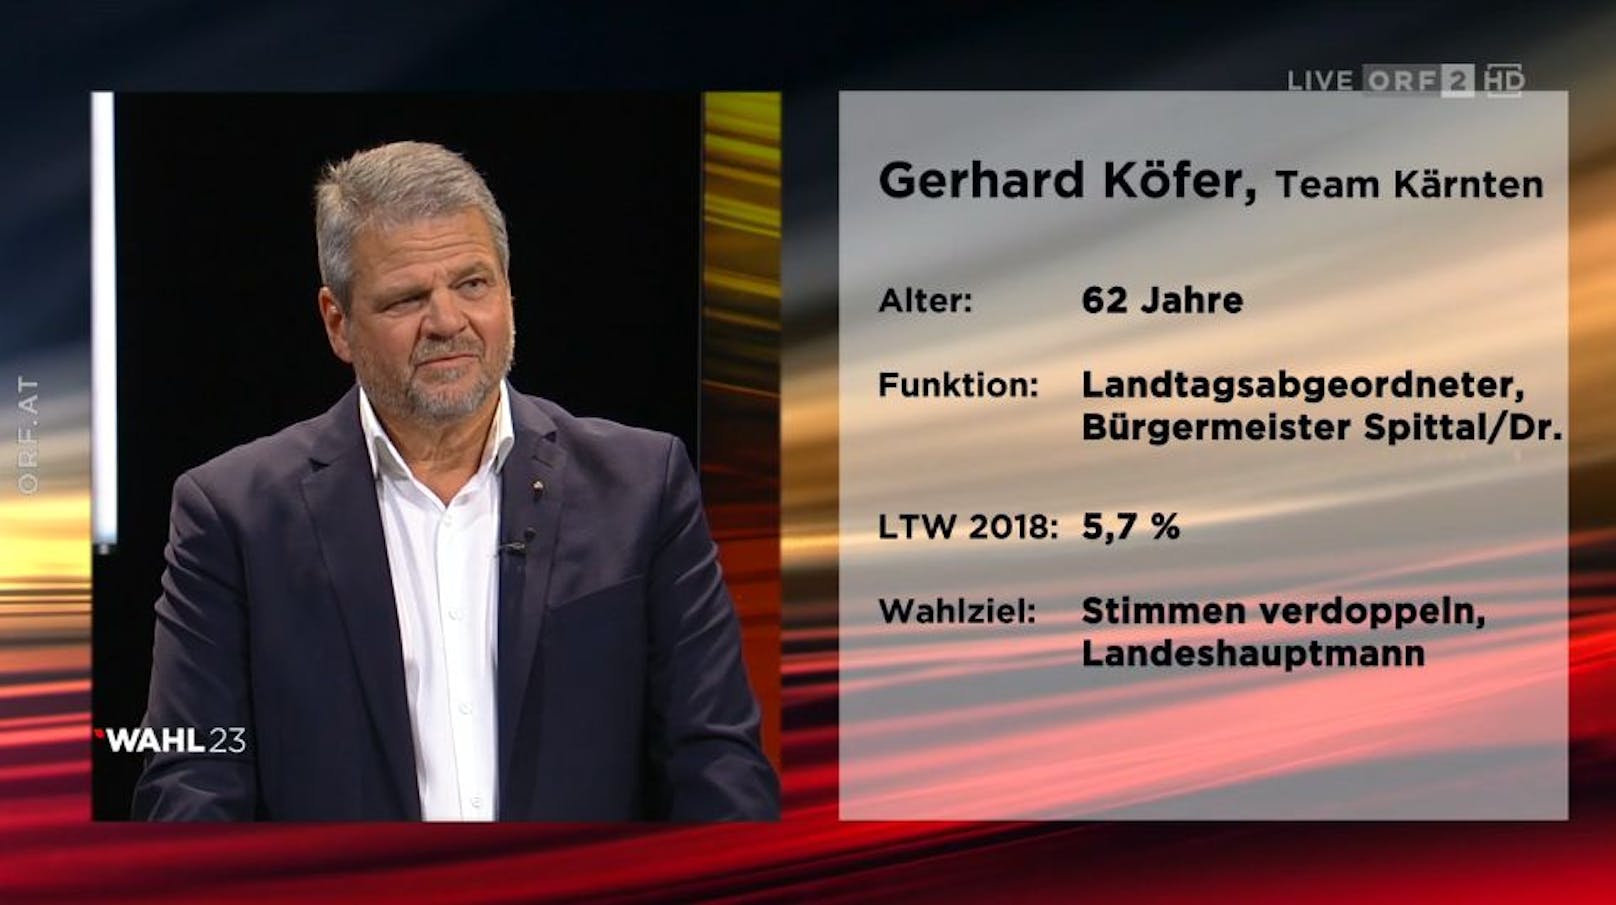 <strong>Gerhard Köfer</strong> (Team Kärnten)